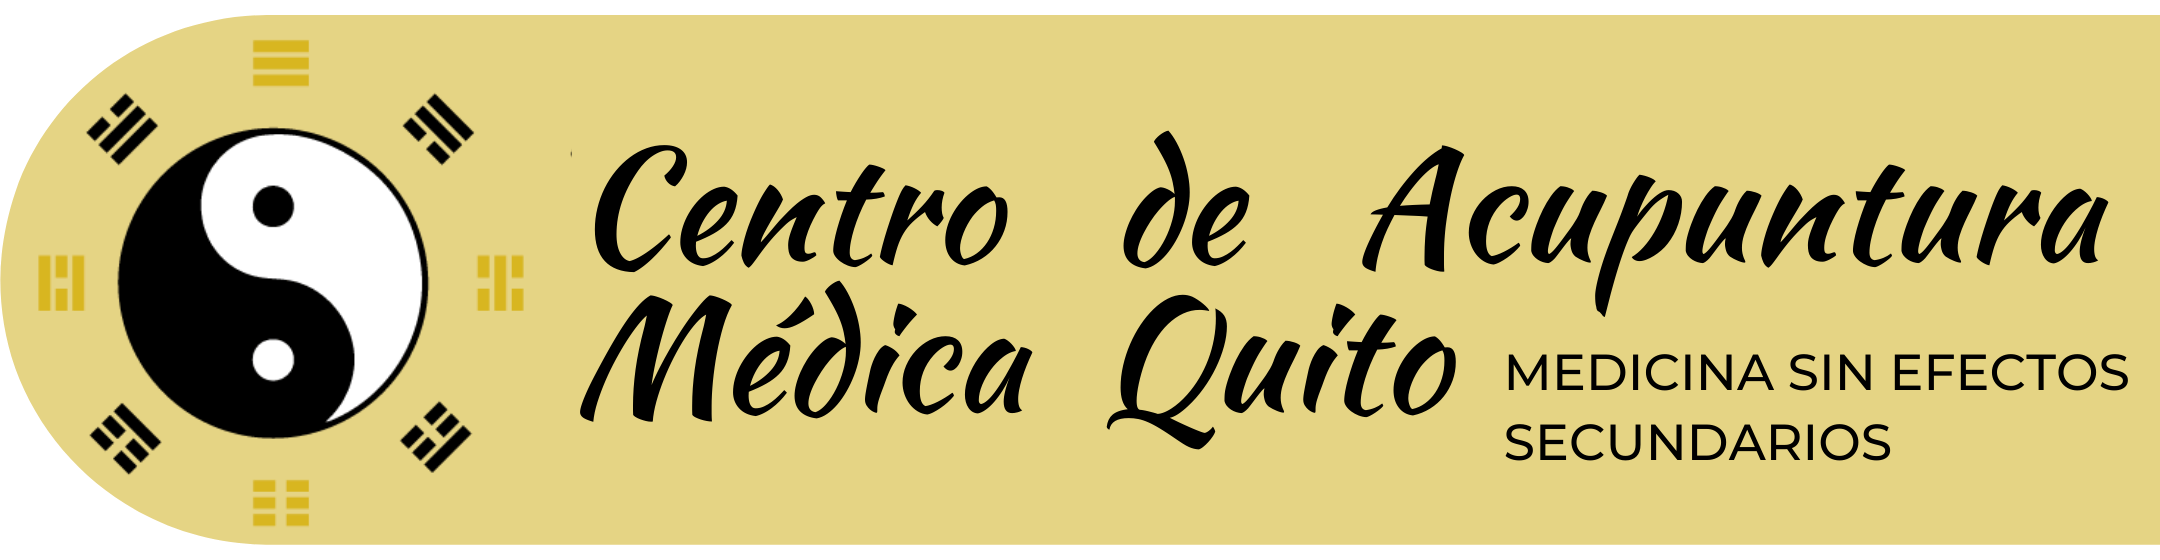 Acupunturistas en Quito - Acupuntura Quito - Acupuntura Ecuador - Auriculoterapia